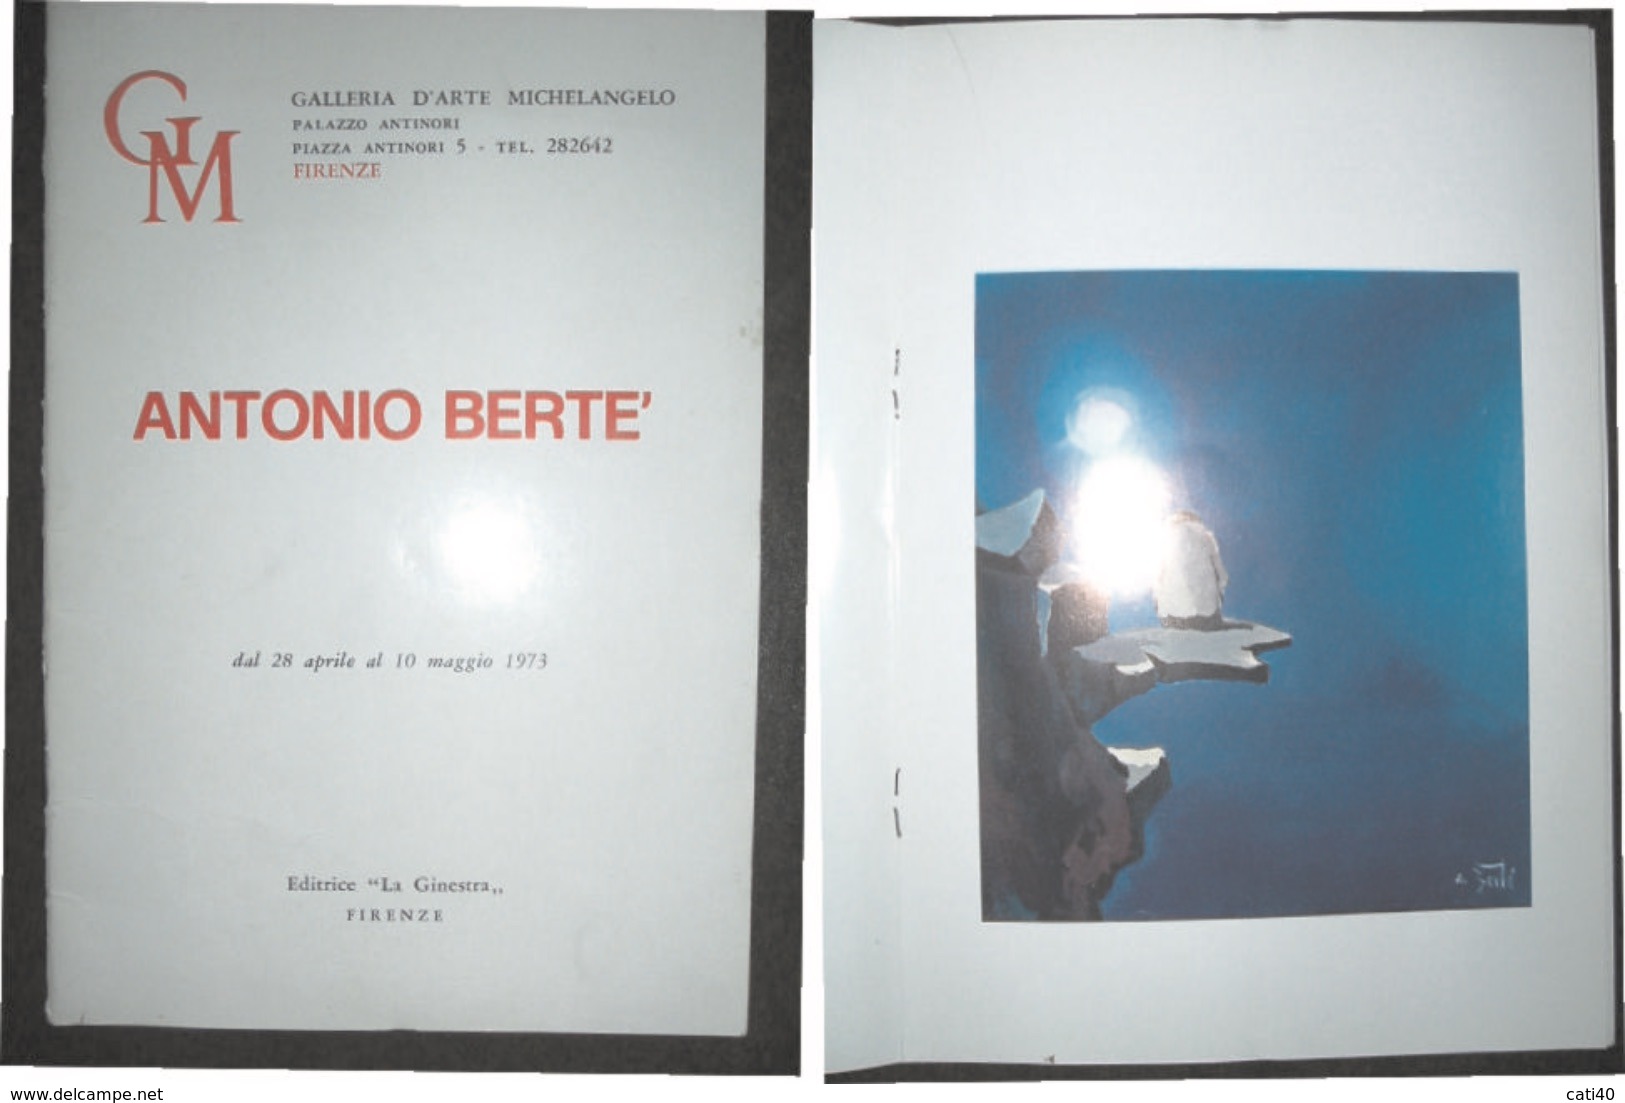 ANTONIO BERTE' CATALOGO DELLA MOSTRA PERSONALE ALLA GALLERIA D'ARTE MICHELANGELO FIRENZE DAL 28 APRILE AL 10 MAGGIO 1973 - Wissenschaften